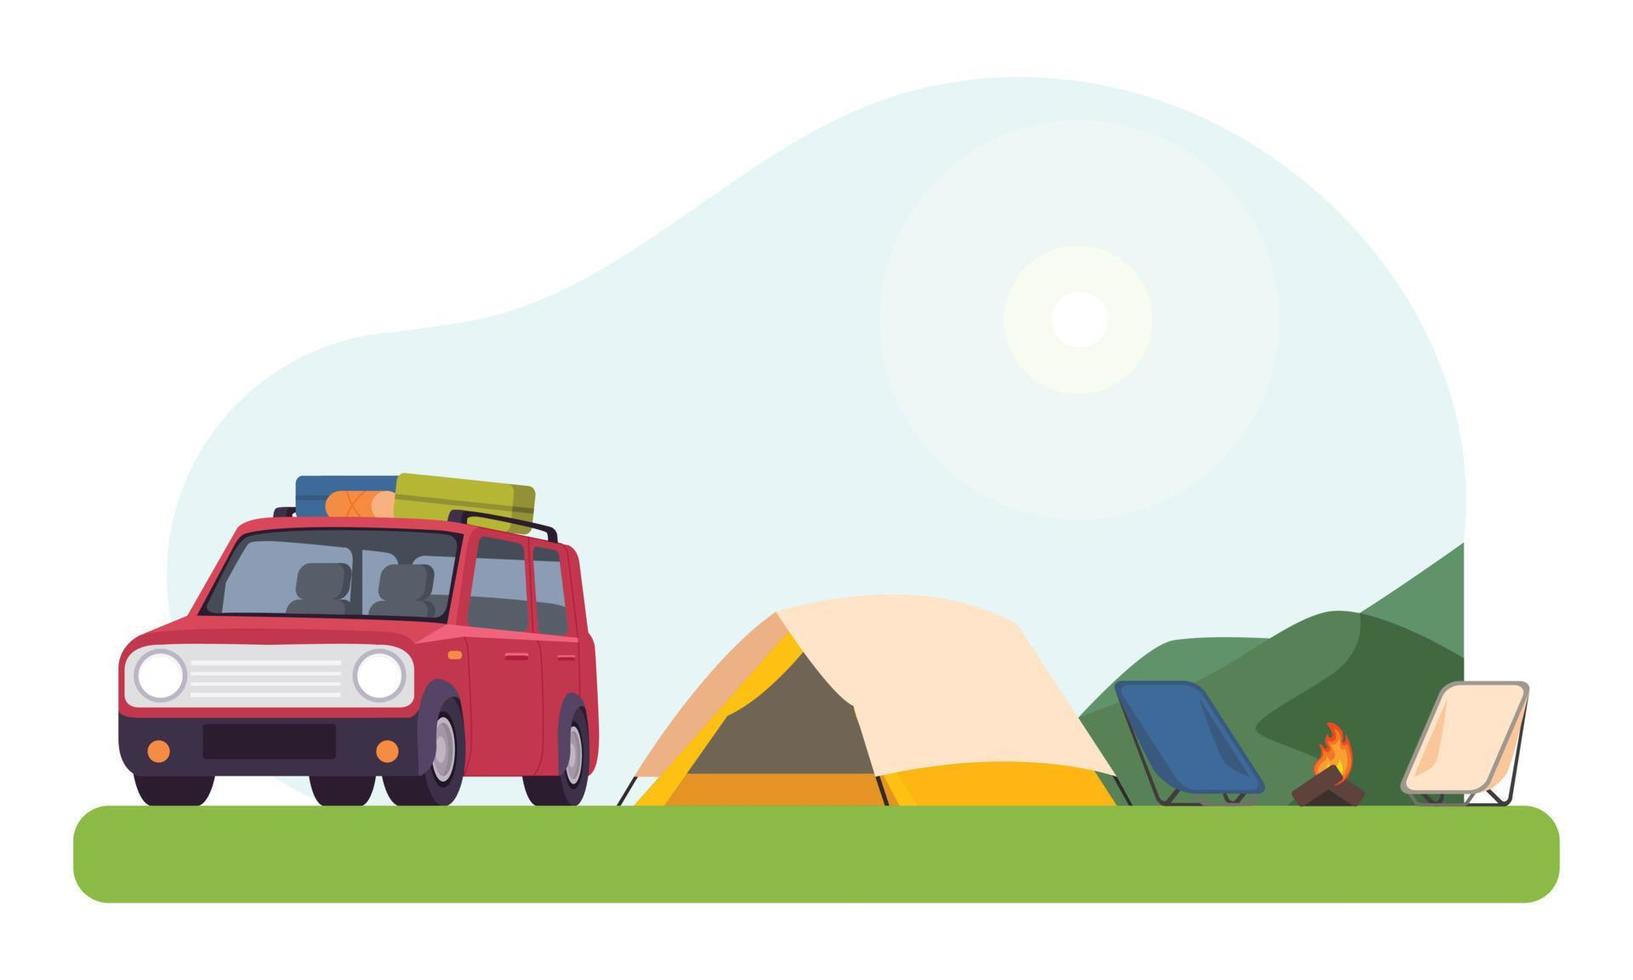 voitures, tentes, feux de camp et équipement de pique-nique en plein air installés dans les aventures de voyage et de camping en forêt vecteur